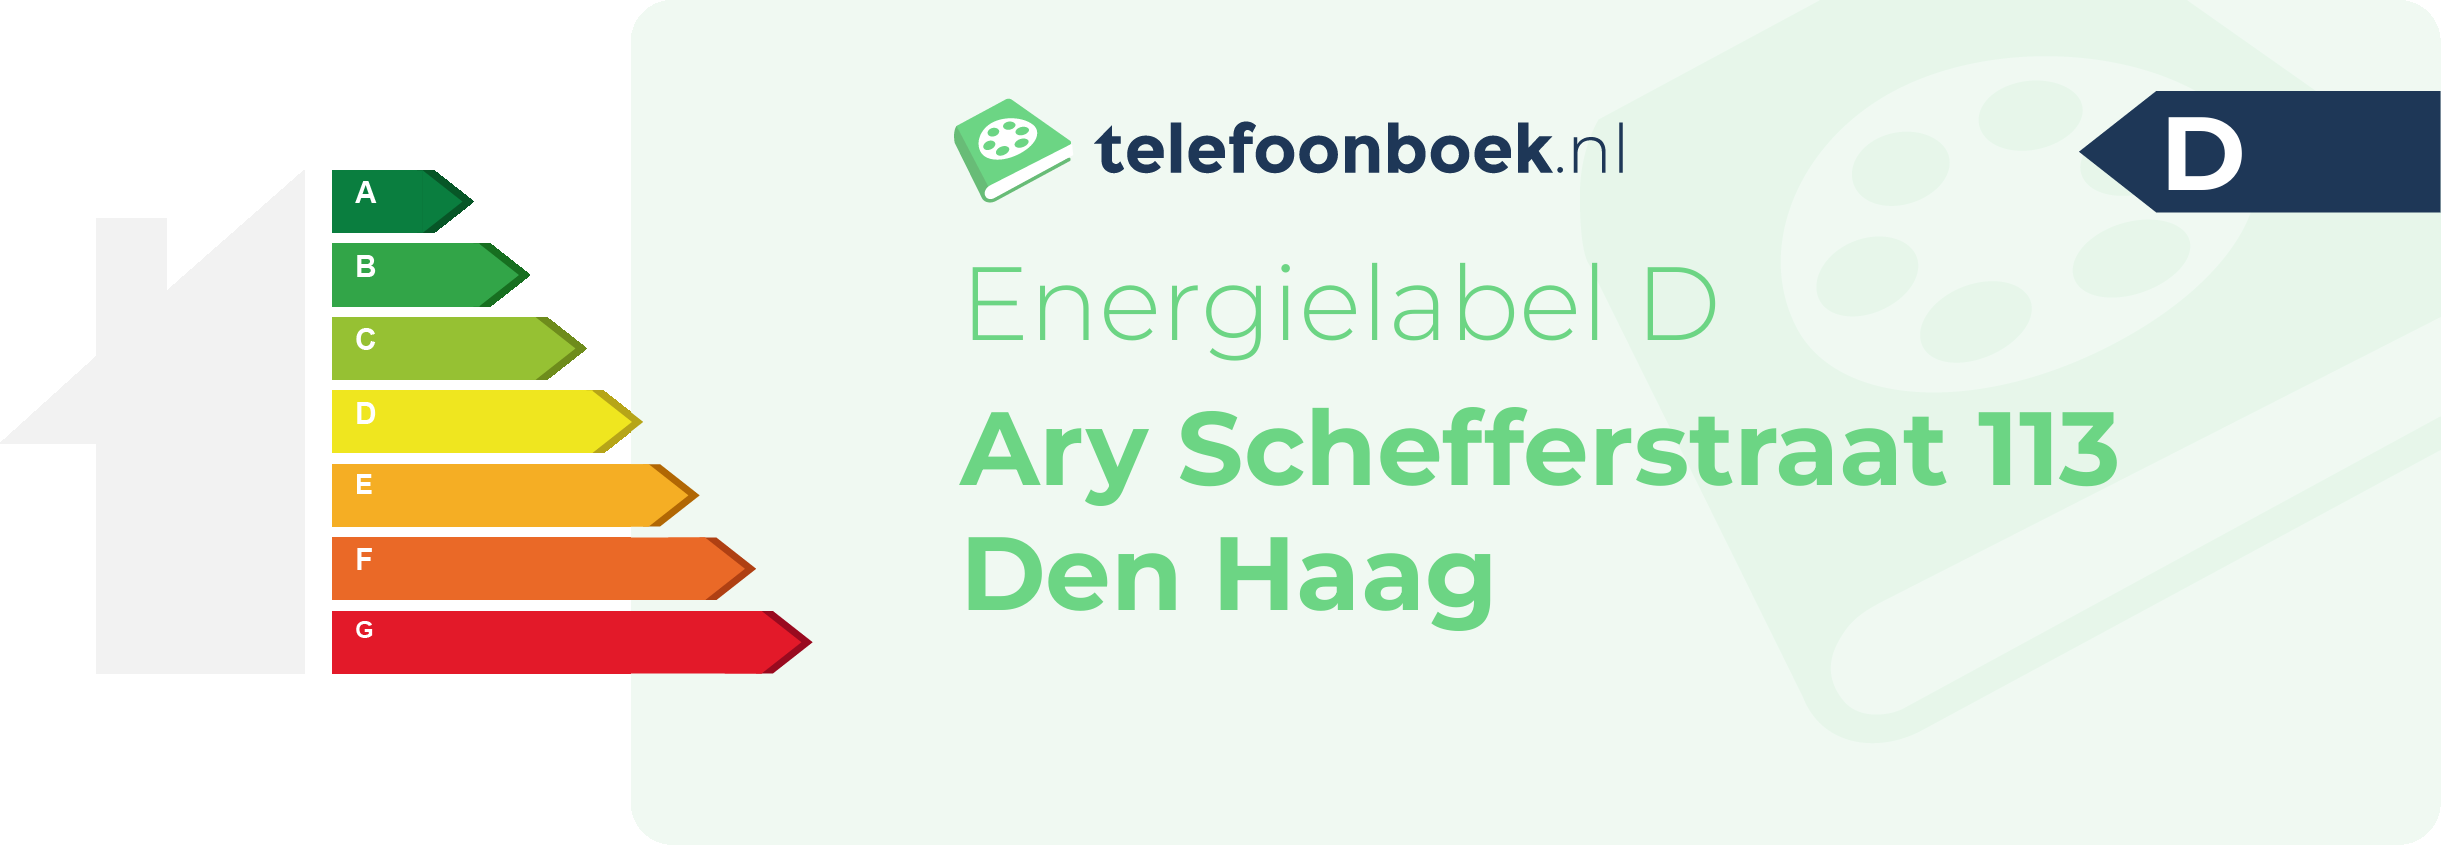 Energielabel Ary Schefferstraat 113 Den Haag